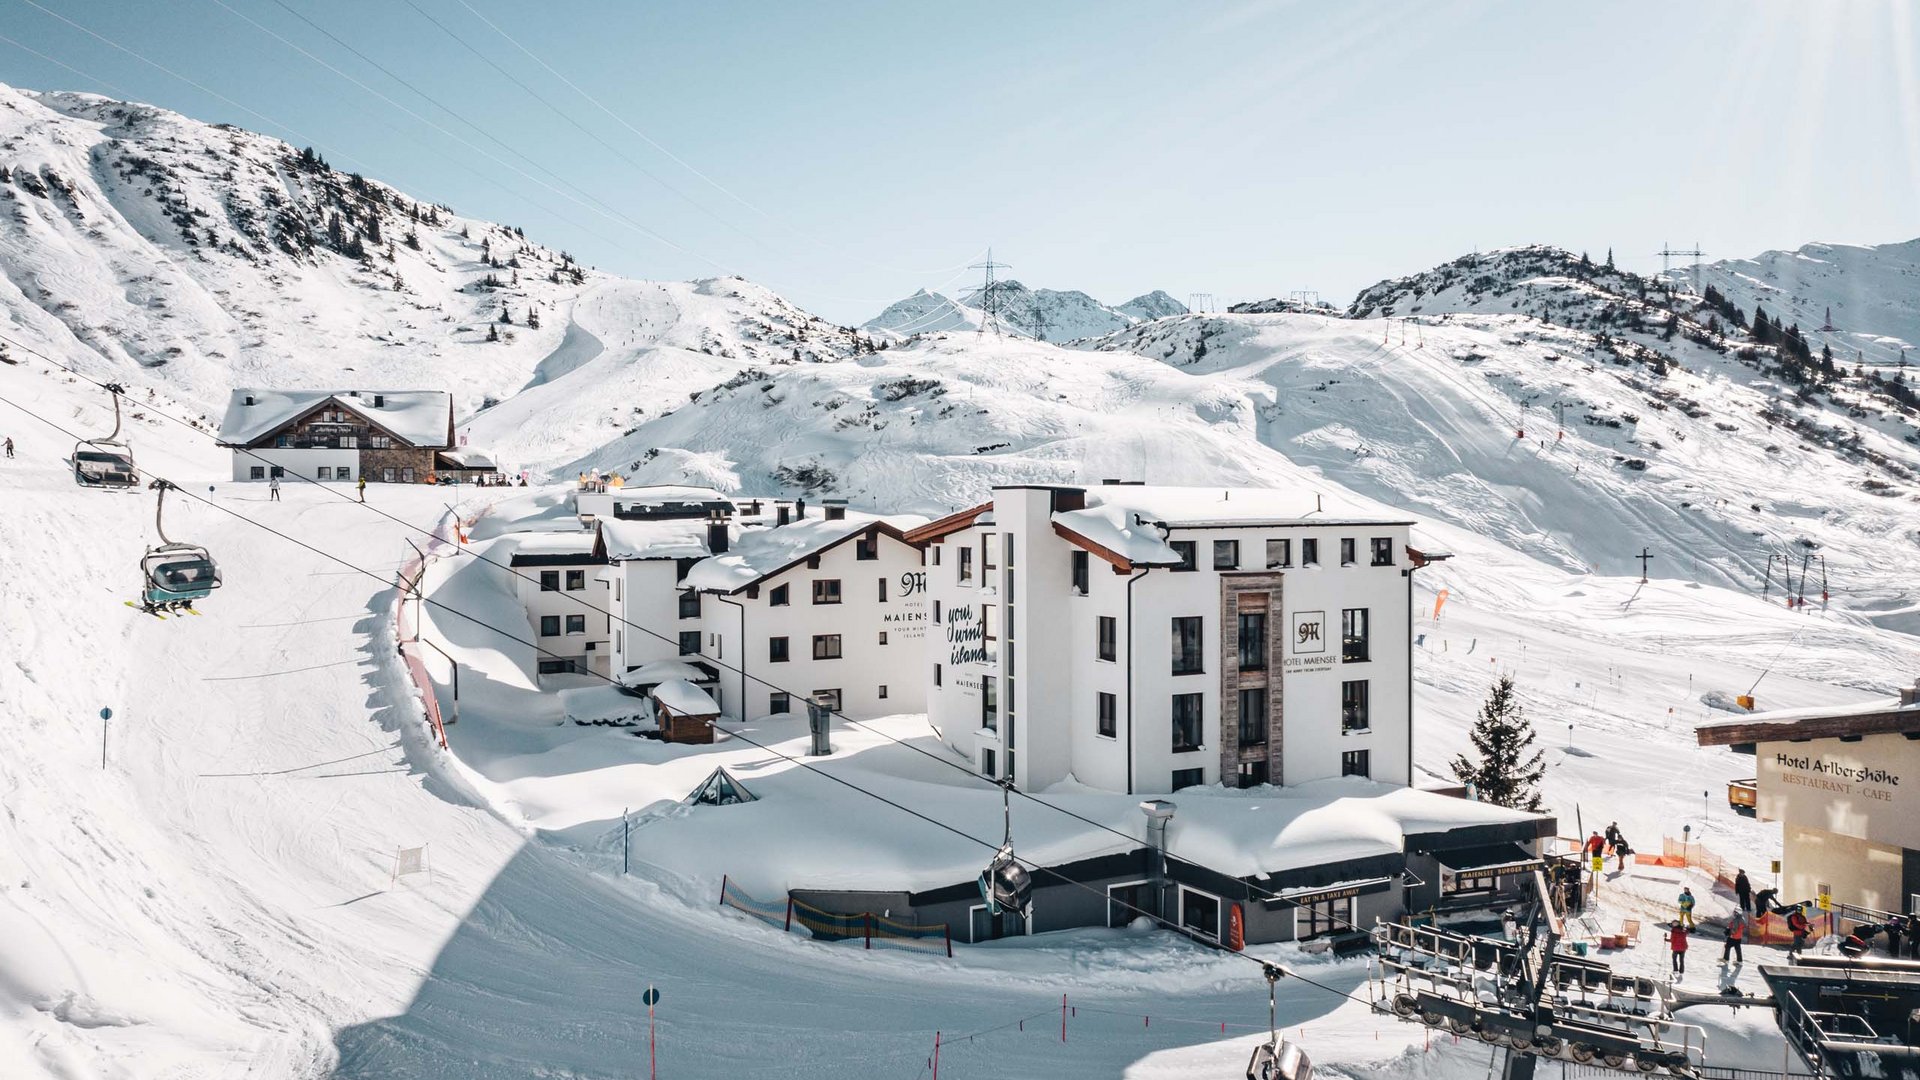 Buchen Sie Ihren Urlaub im Maiensee, Ihrem Hotel am Arlberg